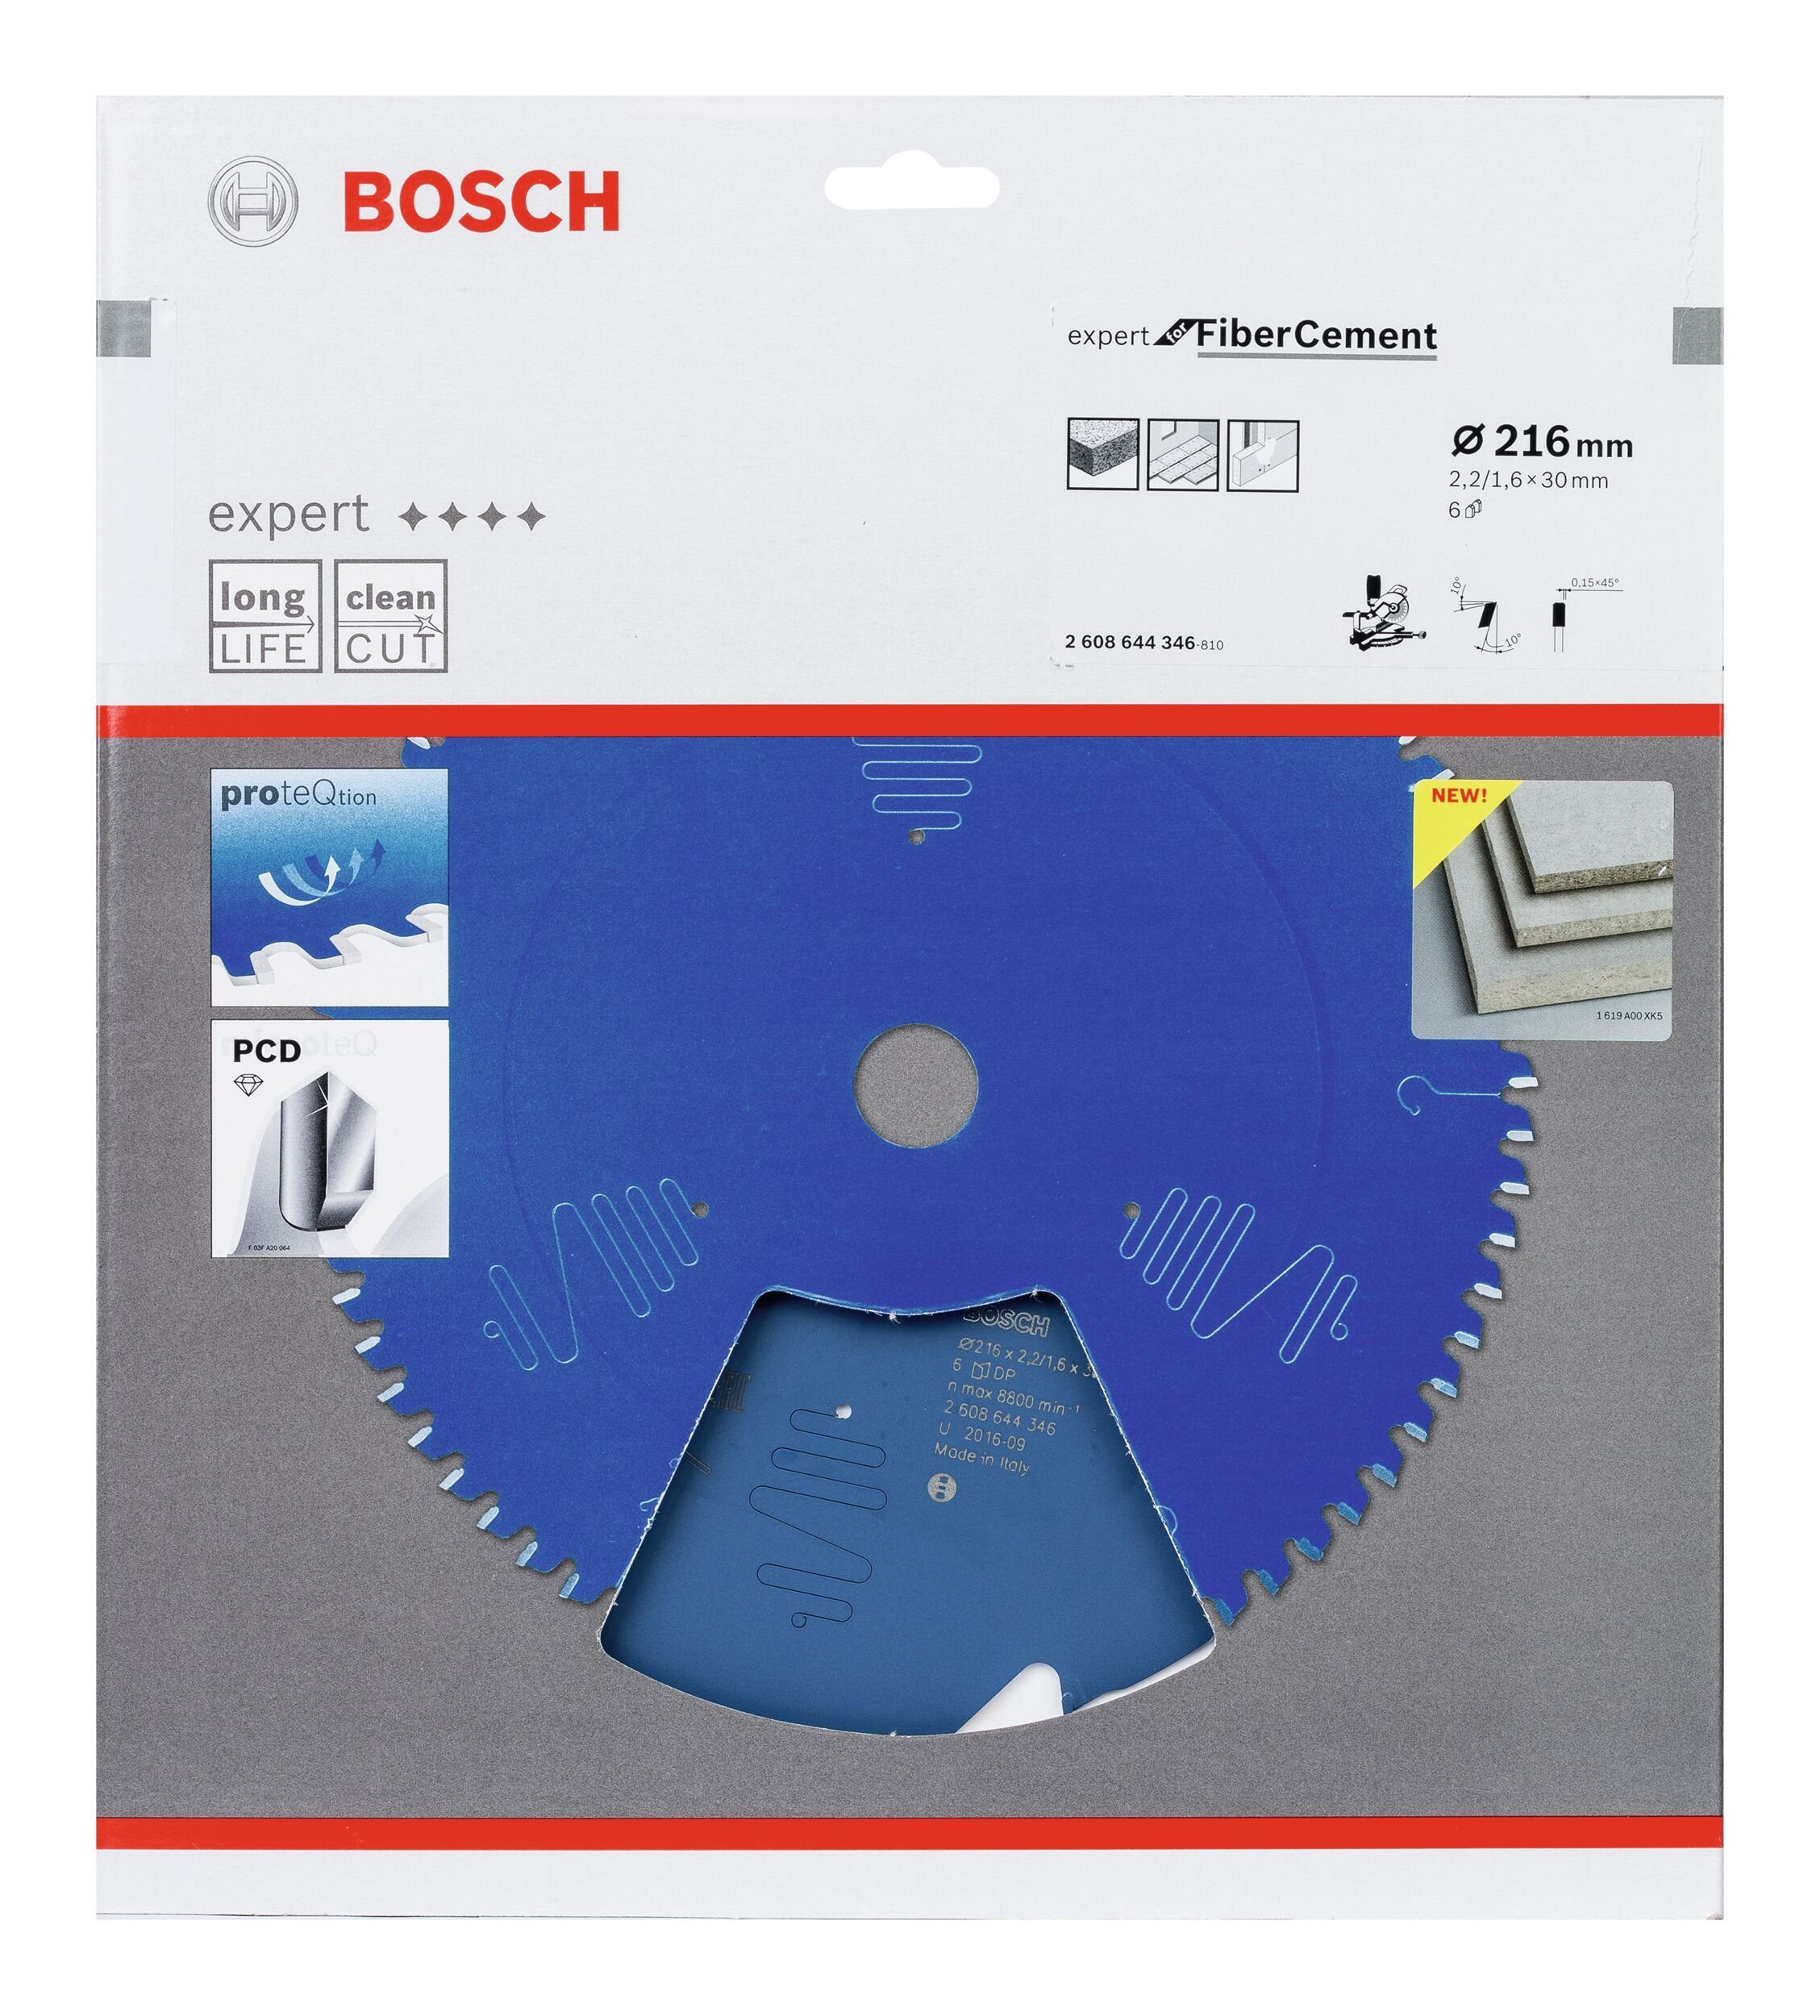 BOSCH Kreissägeblatt 30 x 216 2,2 - Fibre Cement For 6Z, x mm Expert